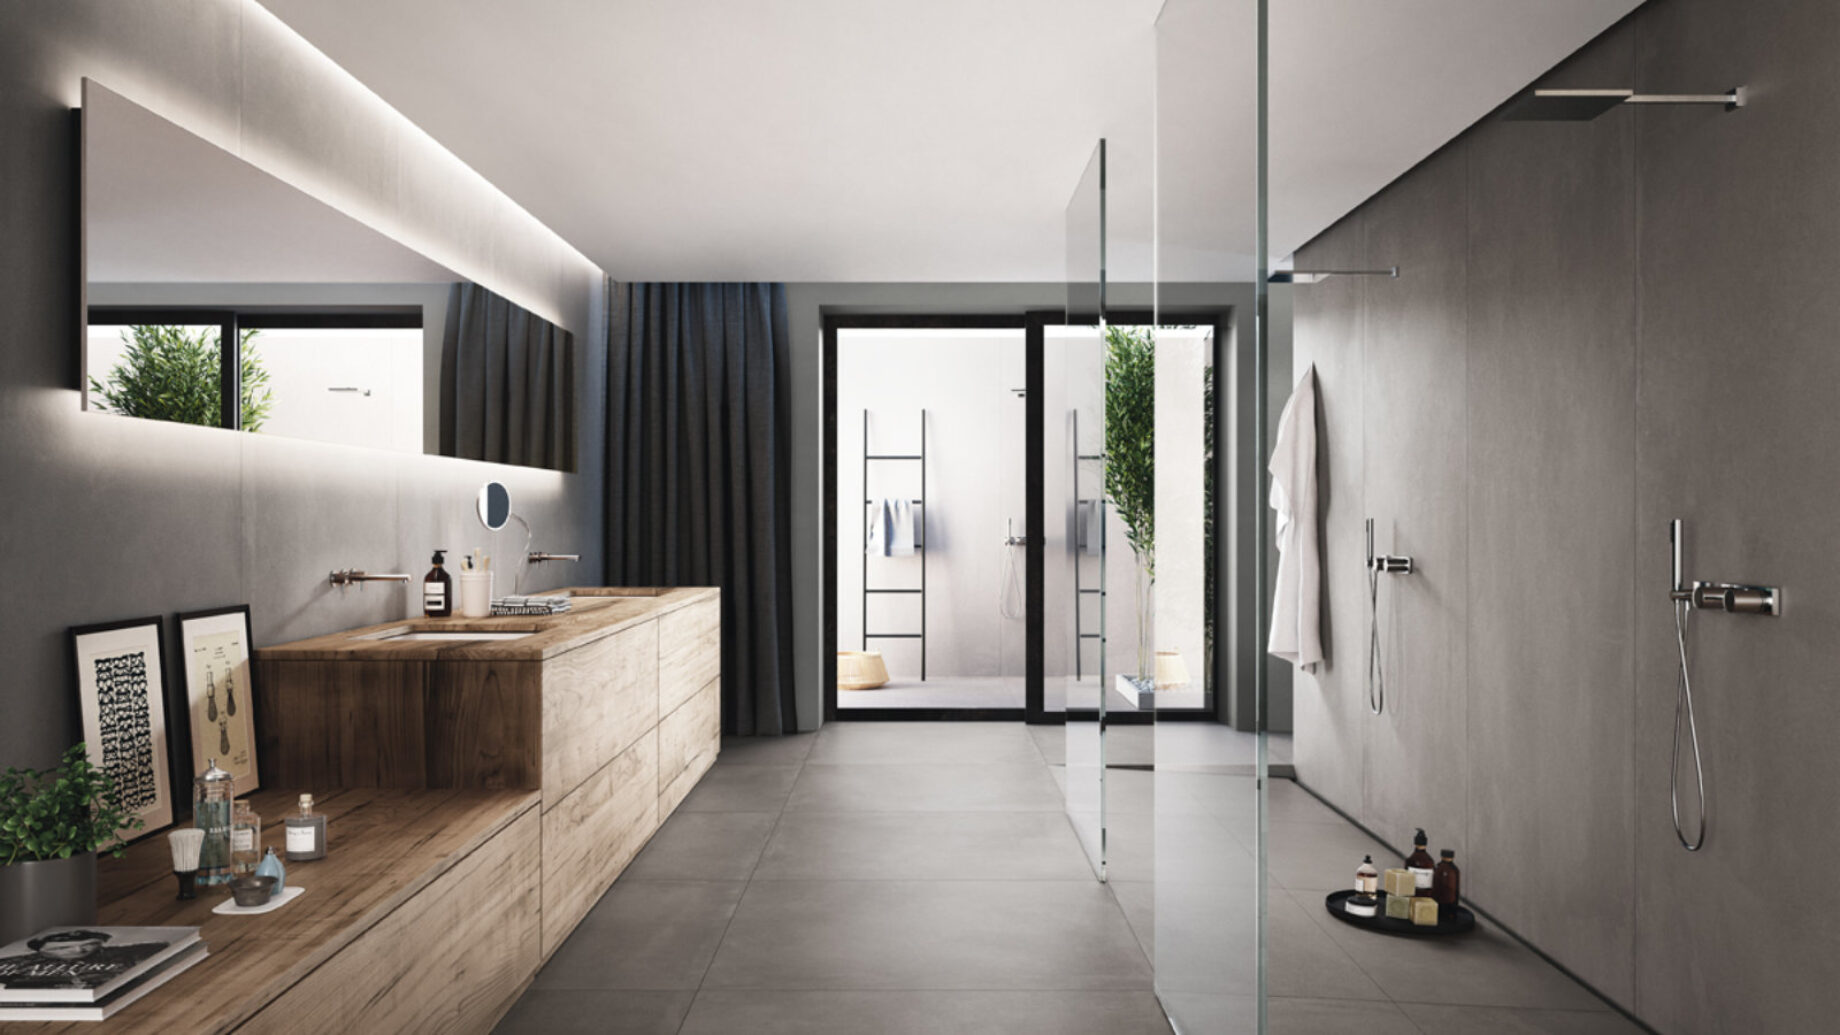 5 Bathroom Tile Ideas